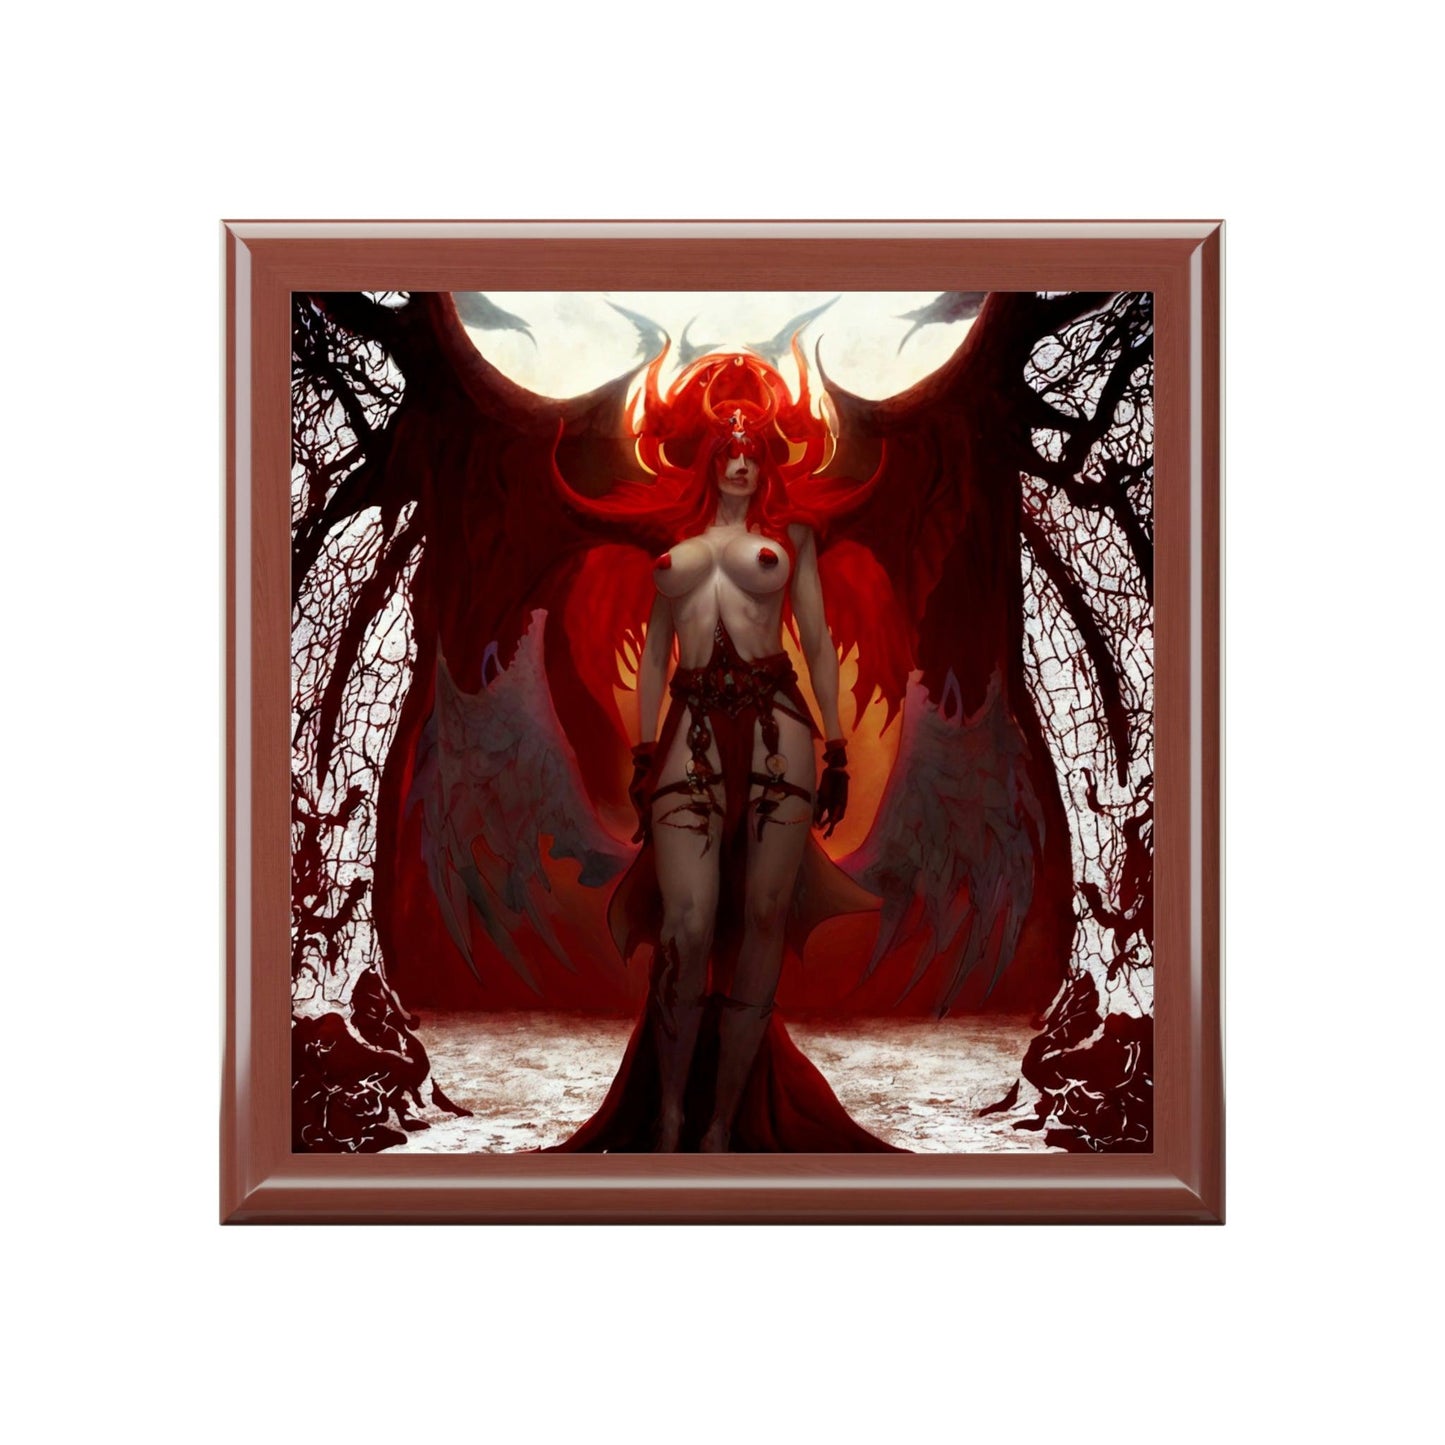 Lilith-Jewelry-Box-የእርስዎን-ታሊስማን-እና-ቀለበቶችን ለማከማቸት-4